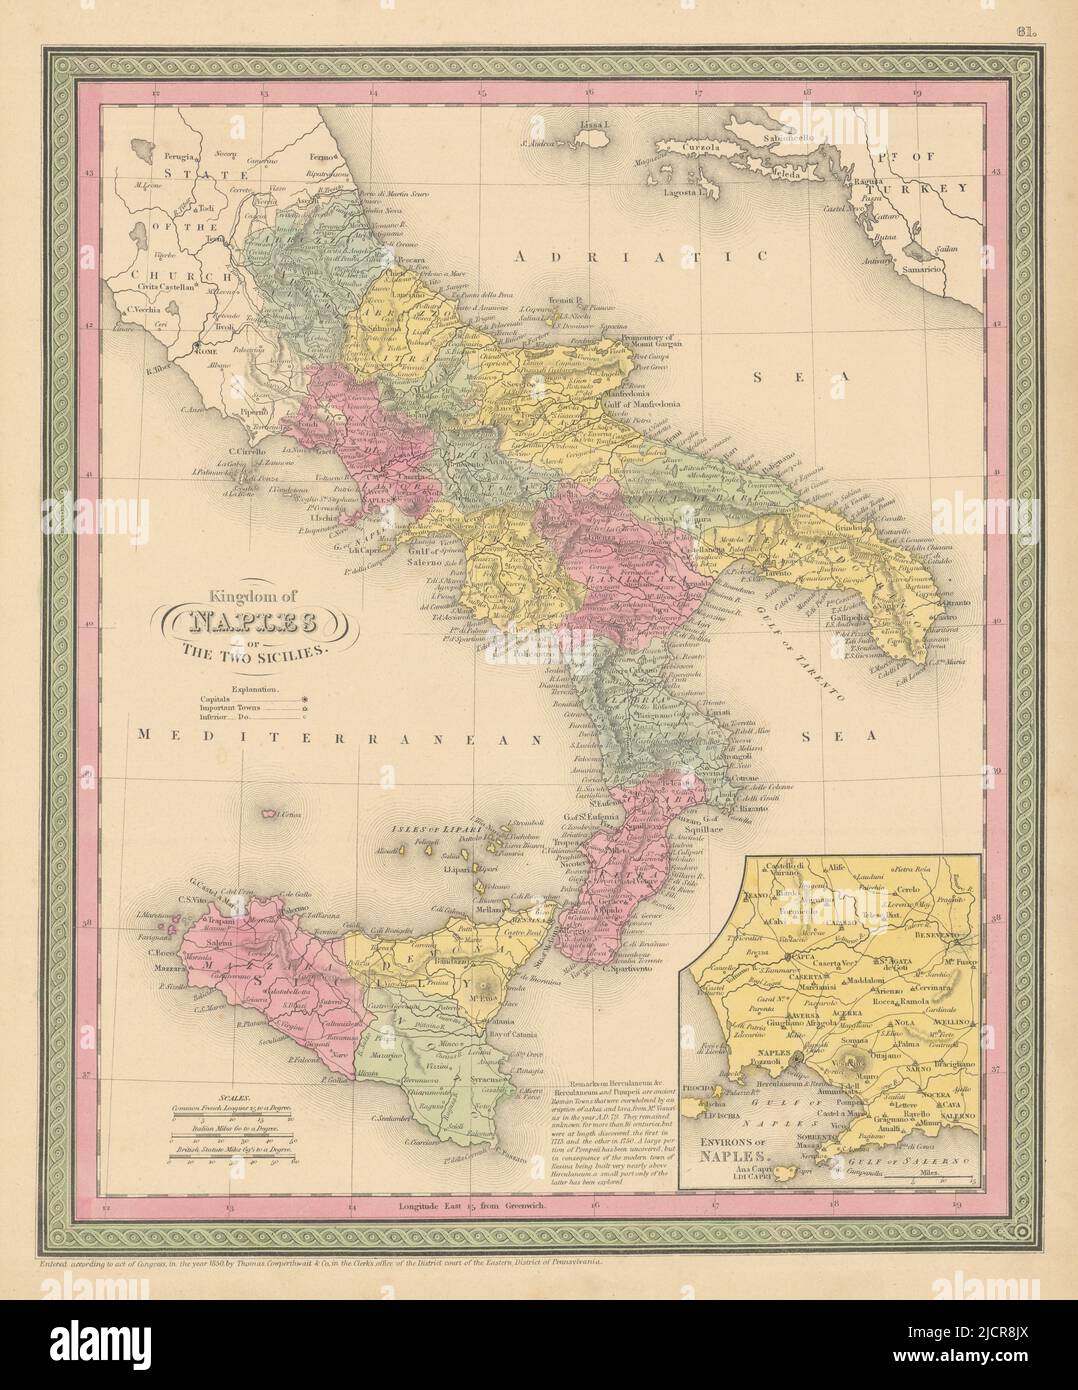 Regno di Napoli o delle due Sicilie. Italia meridionale. Mappa COWPERTHWAIT 1852 Foto Stock